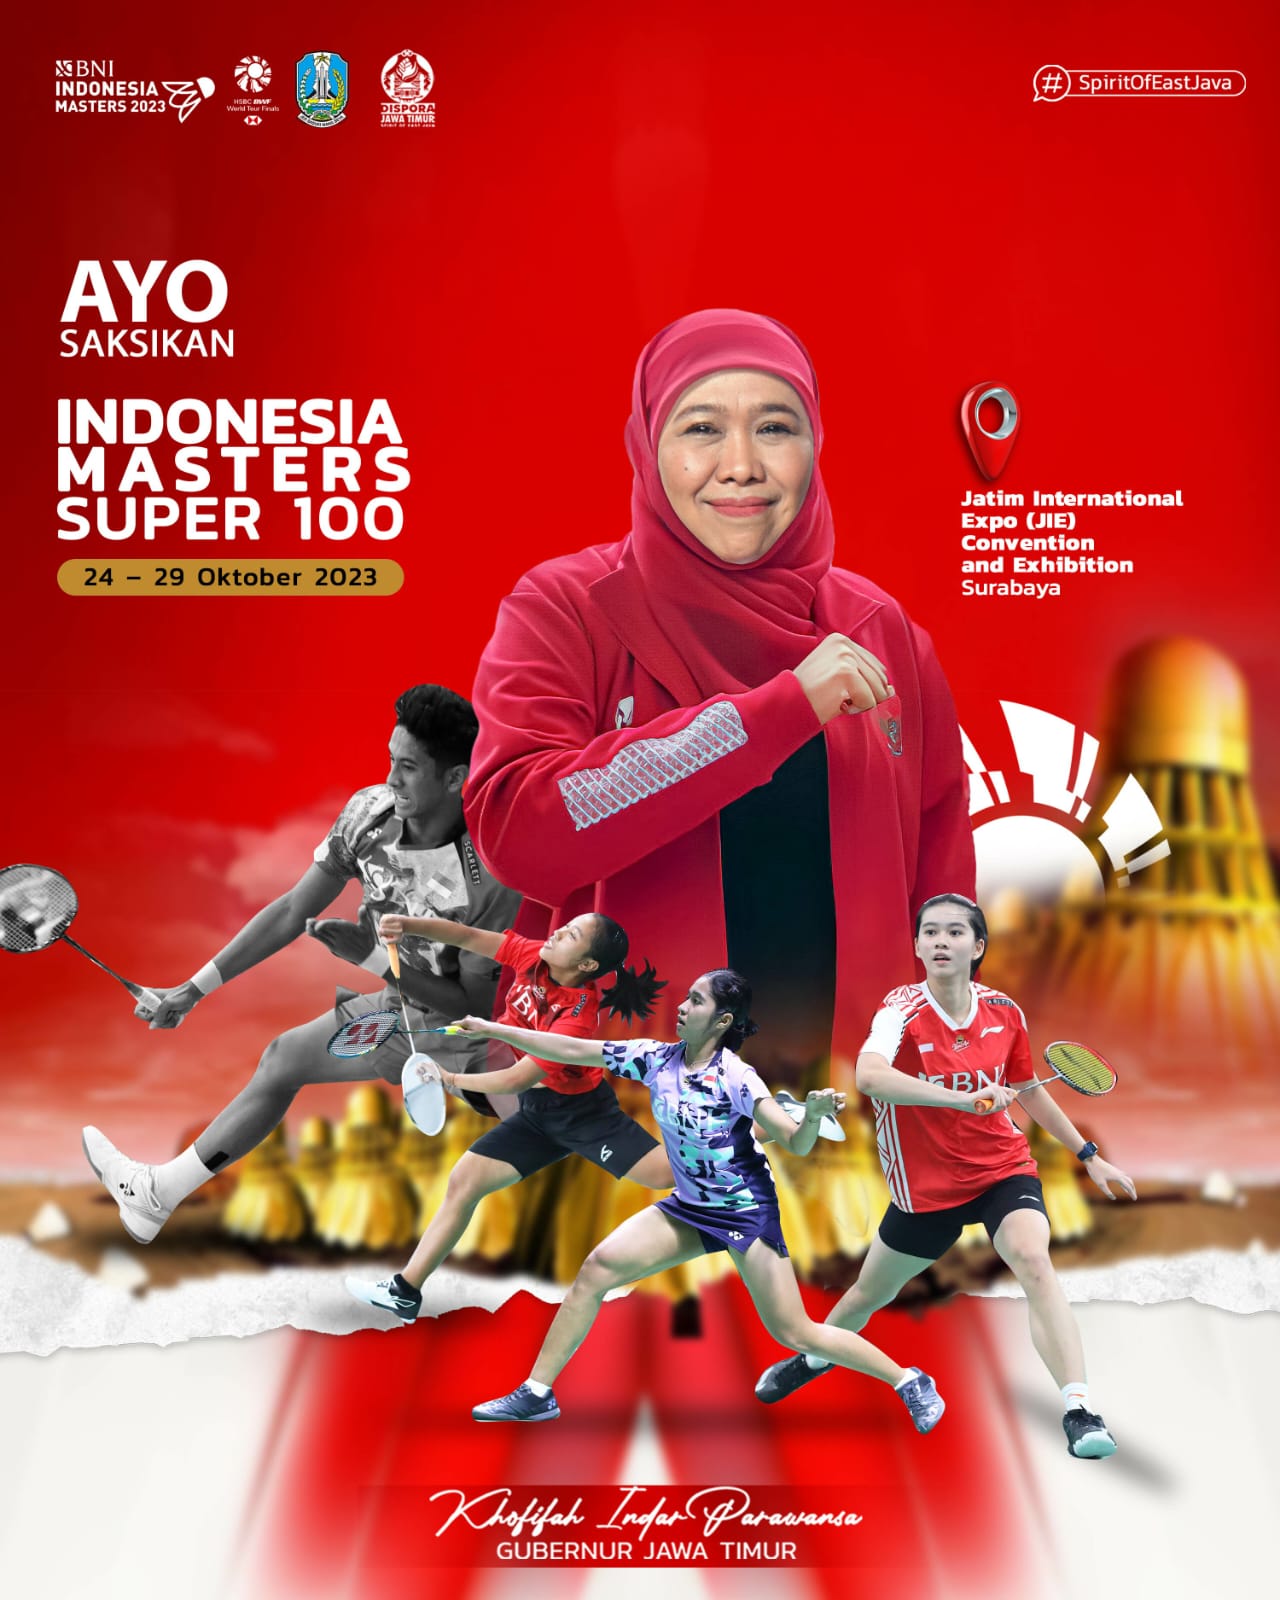 Indonesia Masters Super 100 Siap Digelar Mulai Besok, Jangan Sampai Kehabisan Tiket